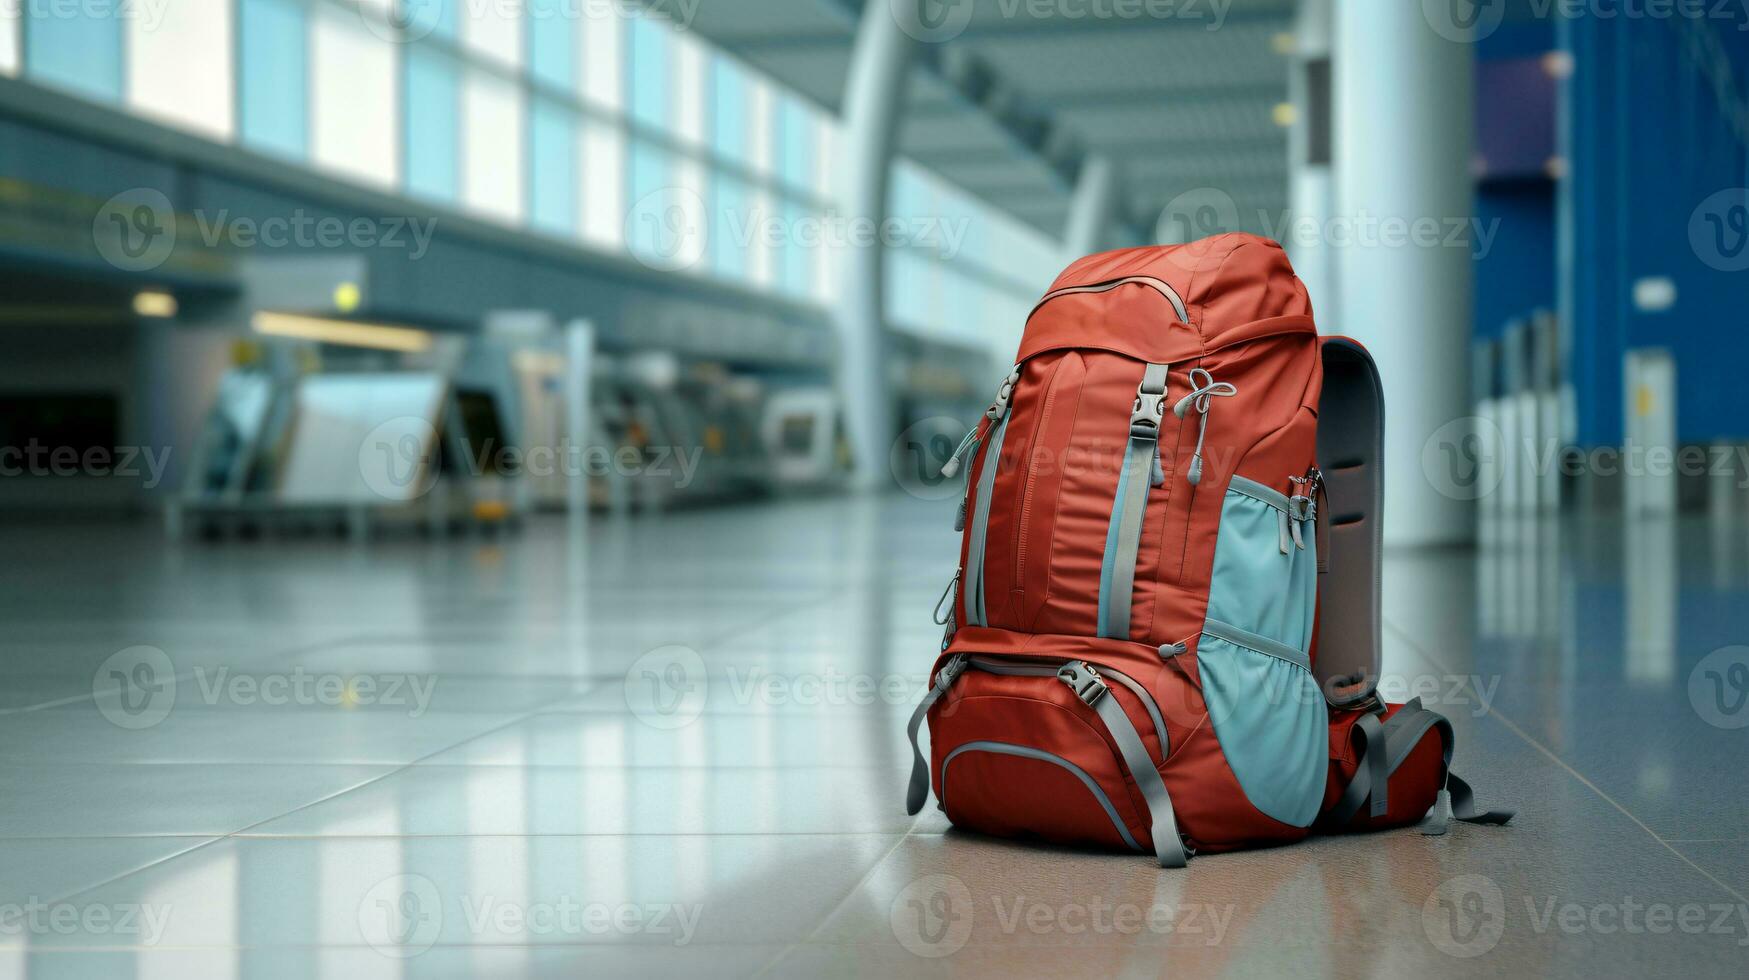 Rucksack Camping oder Träger im Flughafen Terminal Reise und Ferien Konzept foto